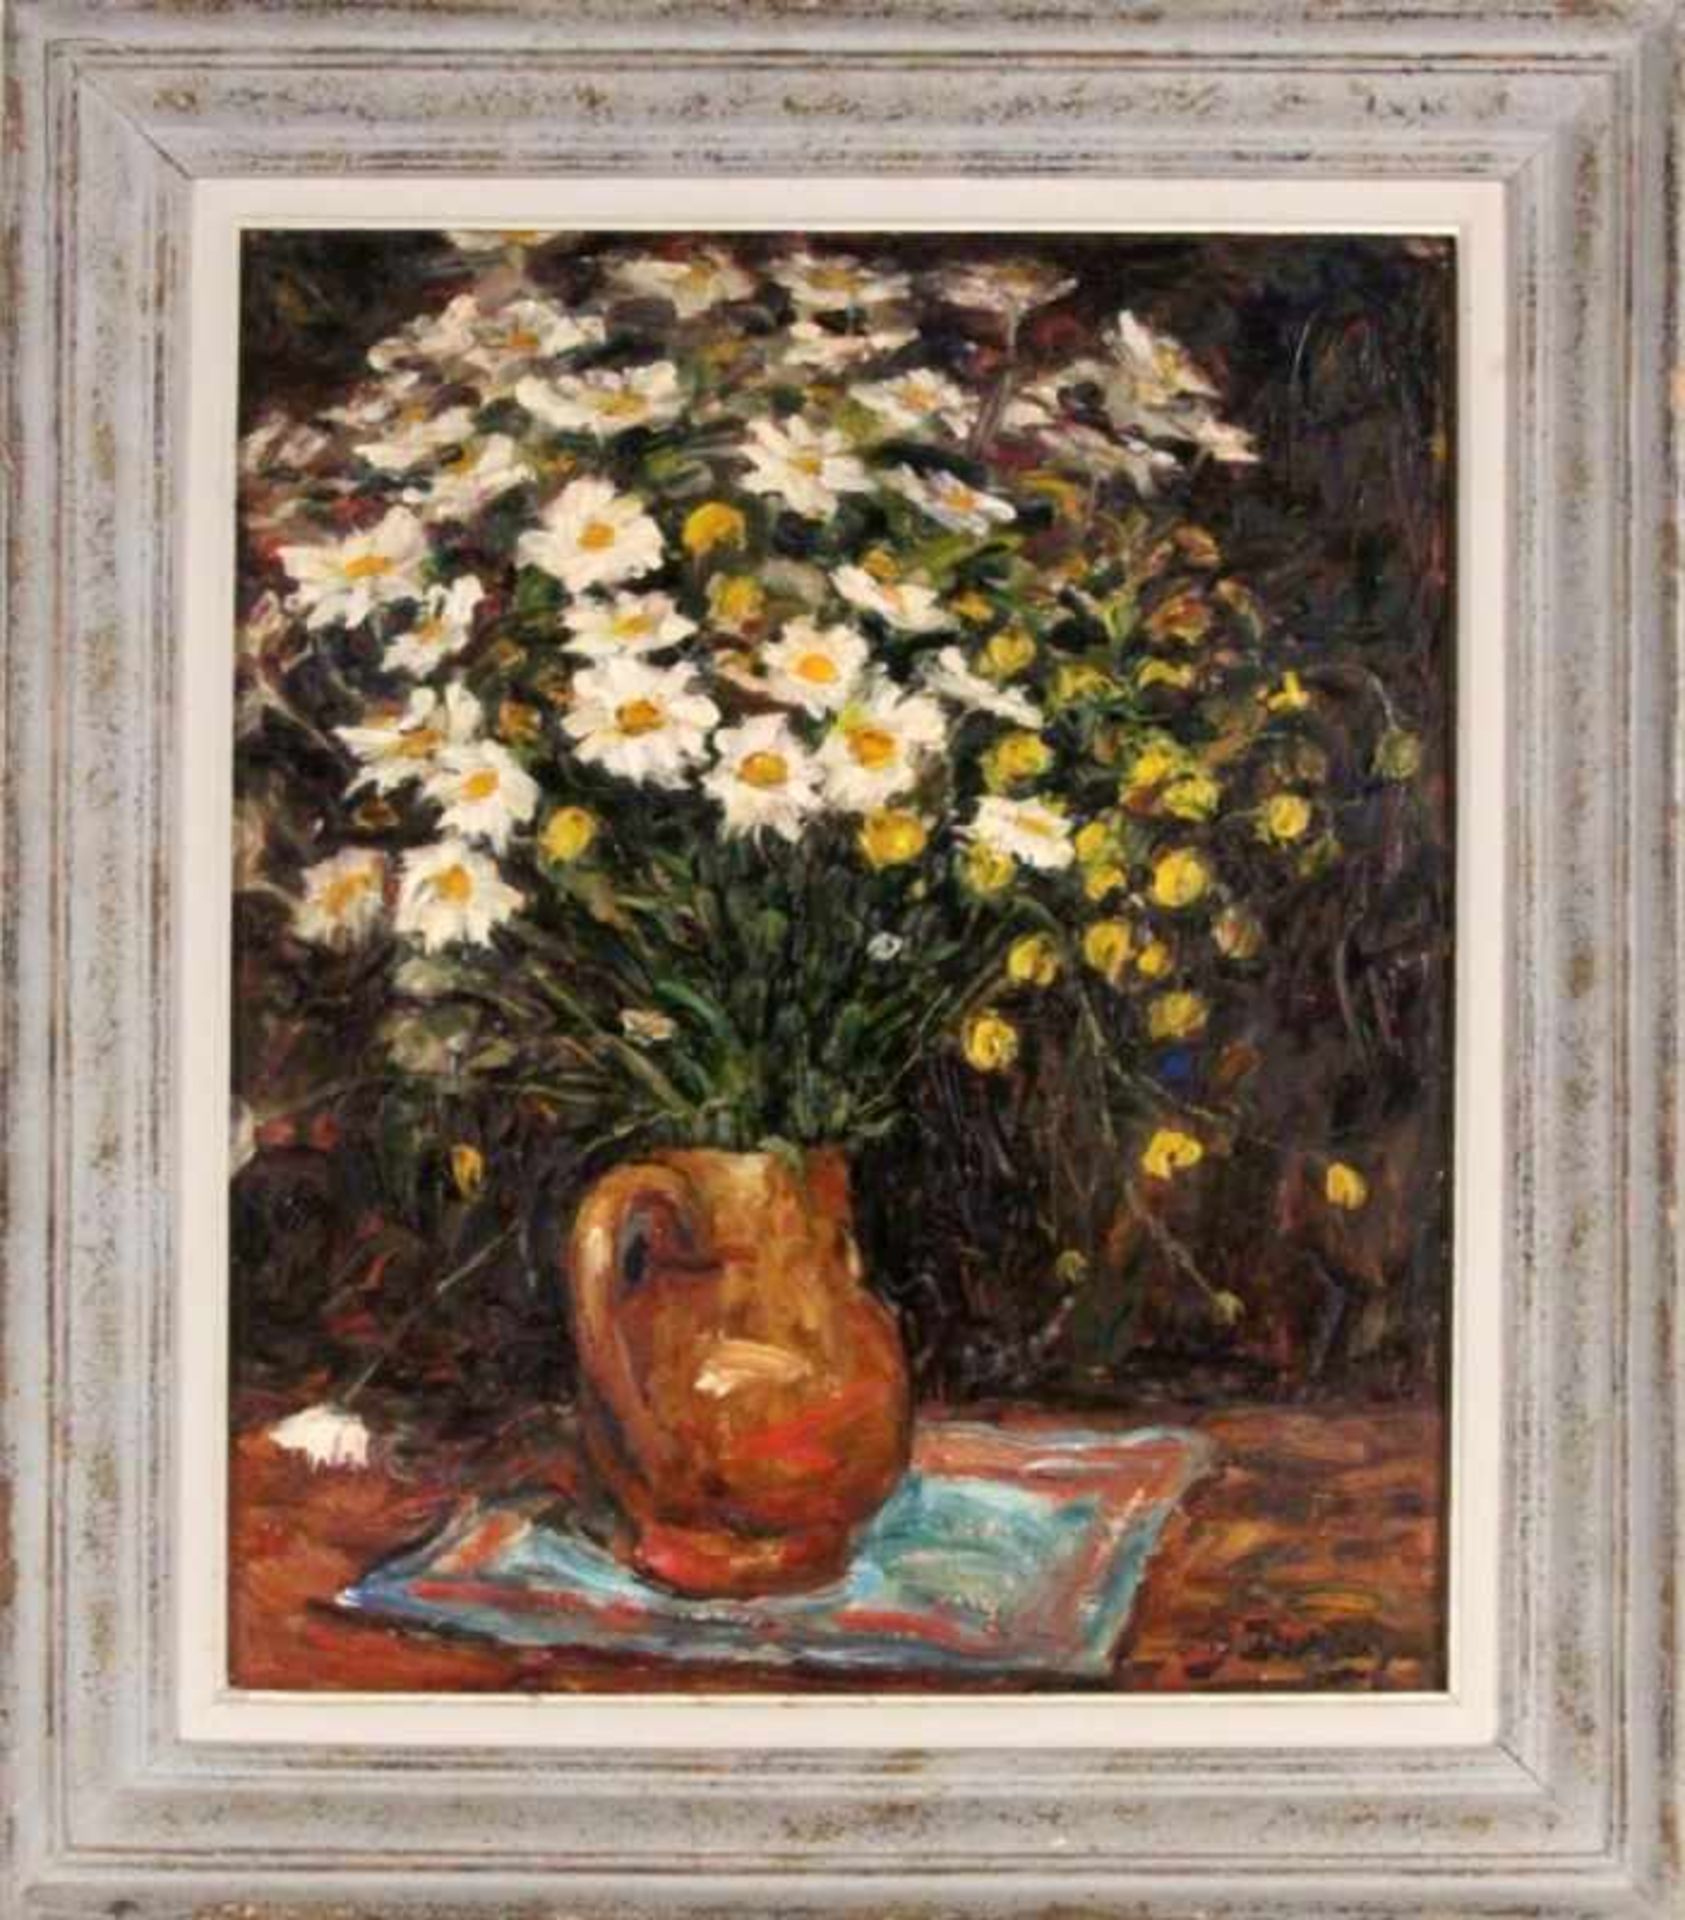 DURIEZ, JULESFrankreich 1900 - 1993 Blumen in der Vase. Öl/Holz, signiert. 65x54cm, Ra.DURIEZ,